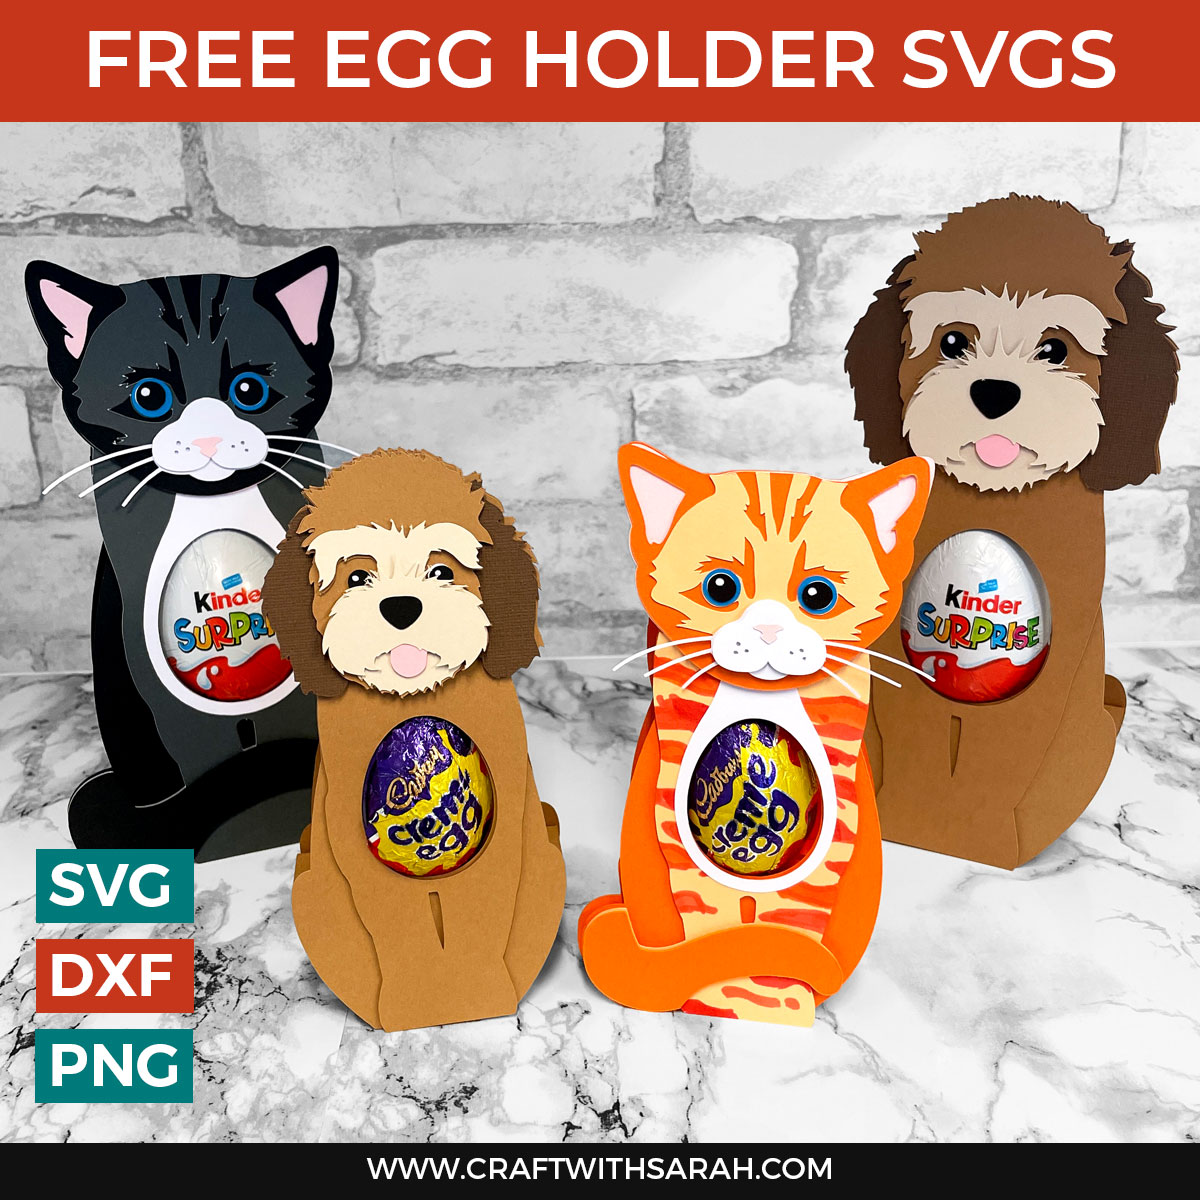 Free Egg Holder SVGs 🐶 Cat & Dog Easter Egg Holders for Cricut